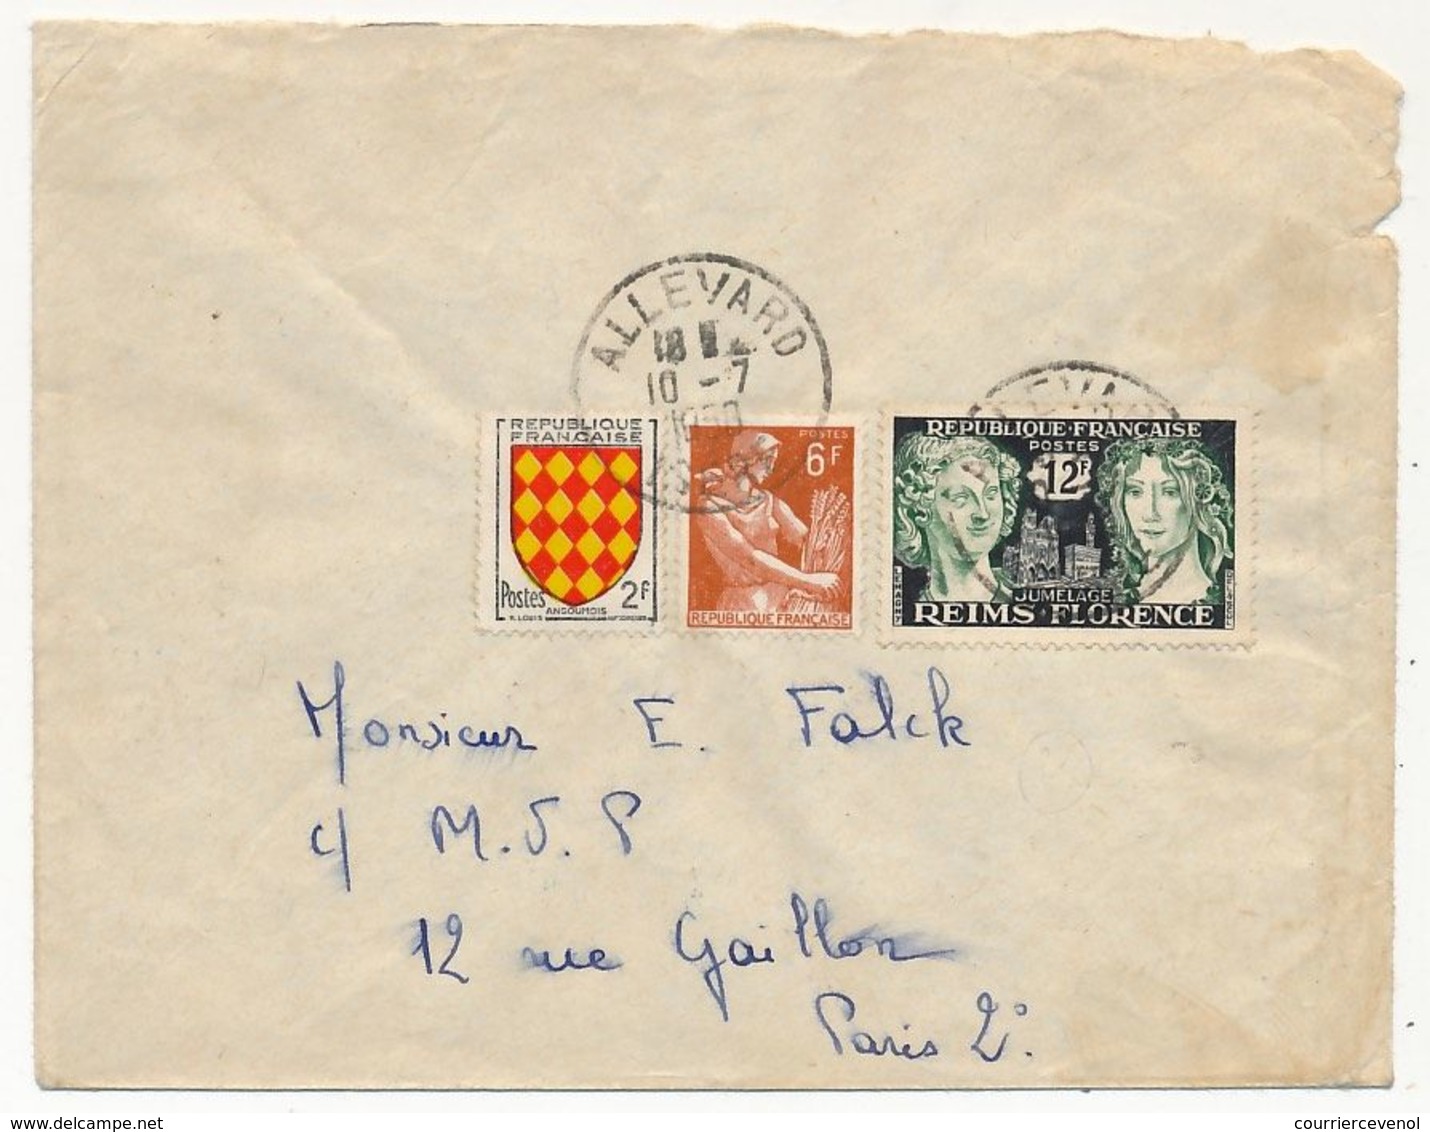 FRANCE - Enveloppe Affr. Composé 12F Reims / Florence + 2F Saintonge + 6F Moissonneuse - Allevard 1958 - Covers & Documents